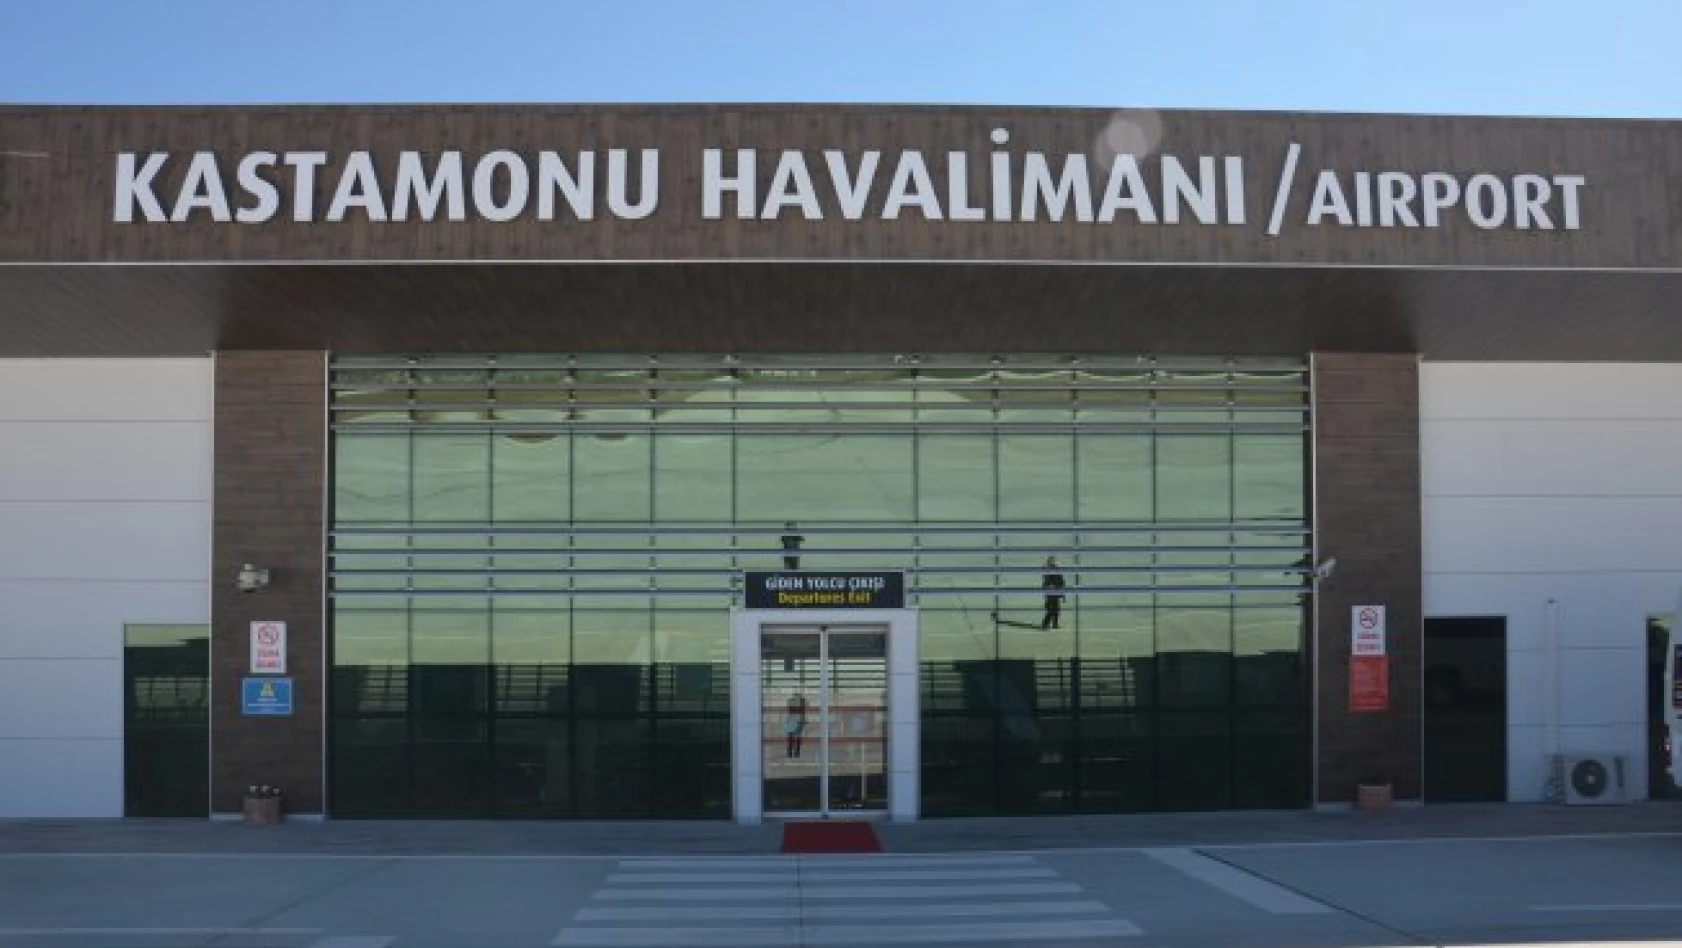 Kastamonu Havalimanı Aralık ayı verileri açıklandı